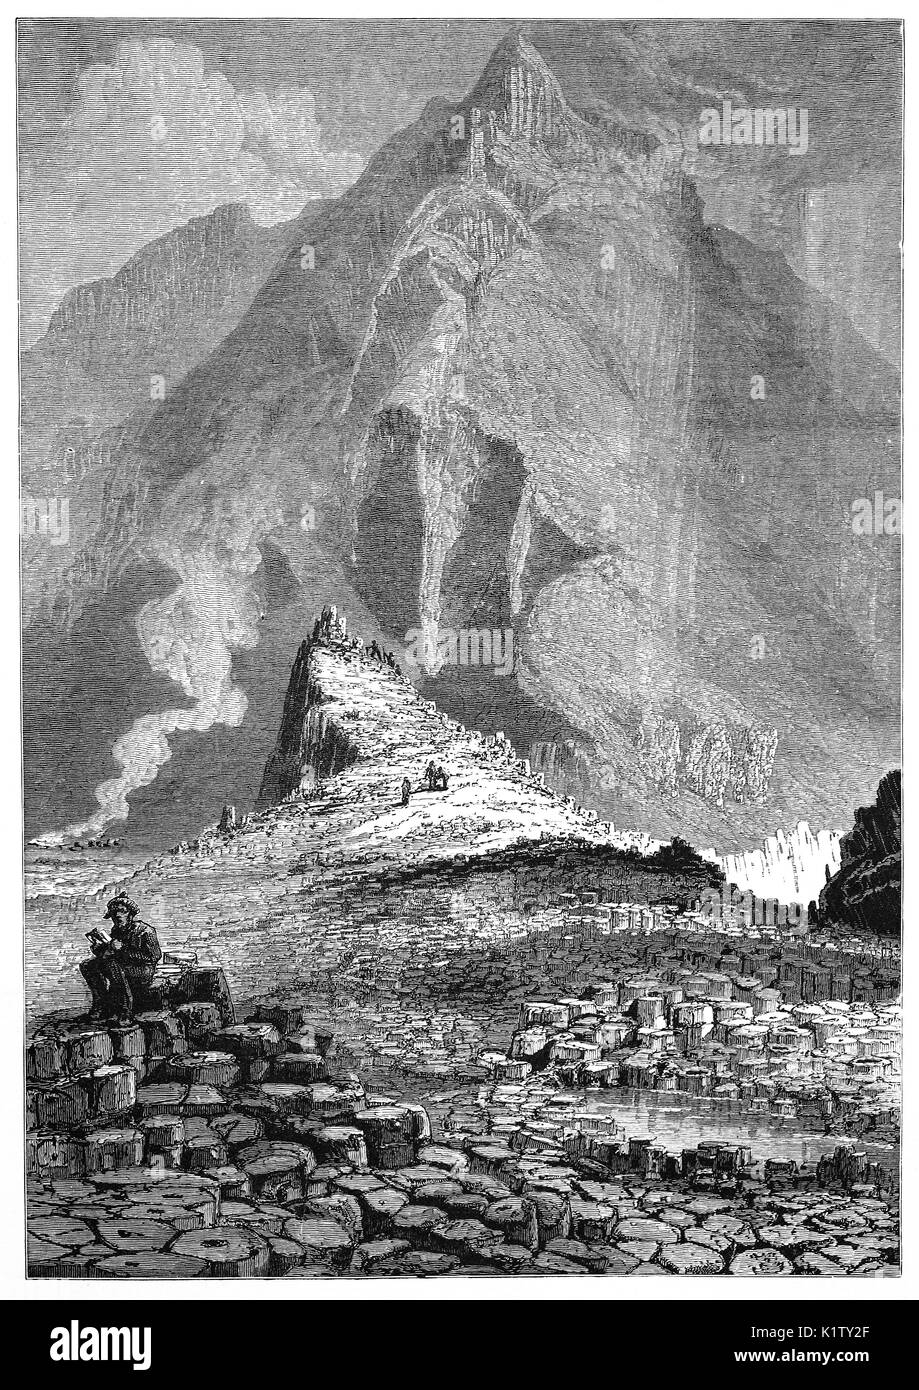 1870 : Le Giant's Causeway, une zone d'environ 40 000 colonnes de basalte d'enclenchement, le résultat d'une ancienne éruption volcanique. Il est situé près de Bushmills dans le comté d'Antrim, sur la côte nord de l'Irlande du Nord. Il a été déclaré site du patrimoine mondial par l'UNESCO en 1986 et une réserve naturelle nationale de l'année suivantes. Banque D'Images